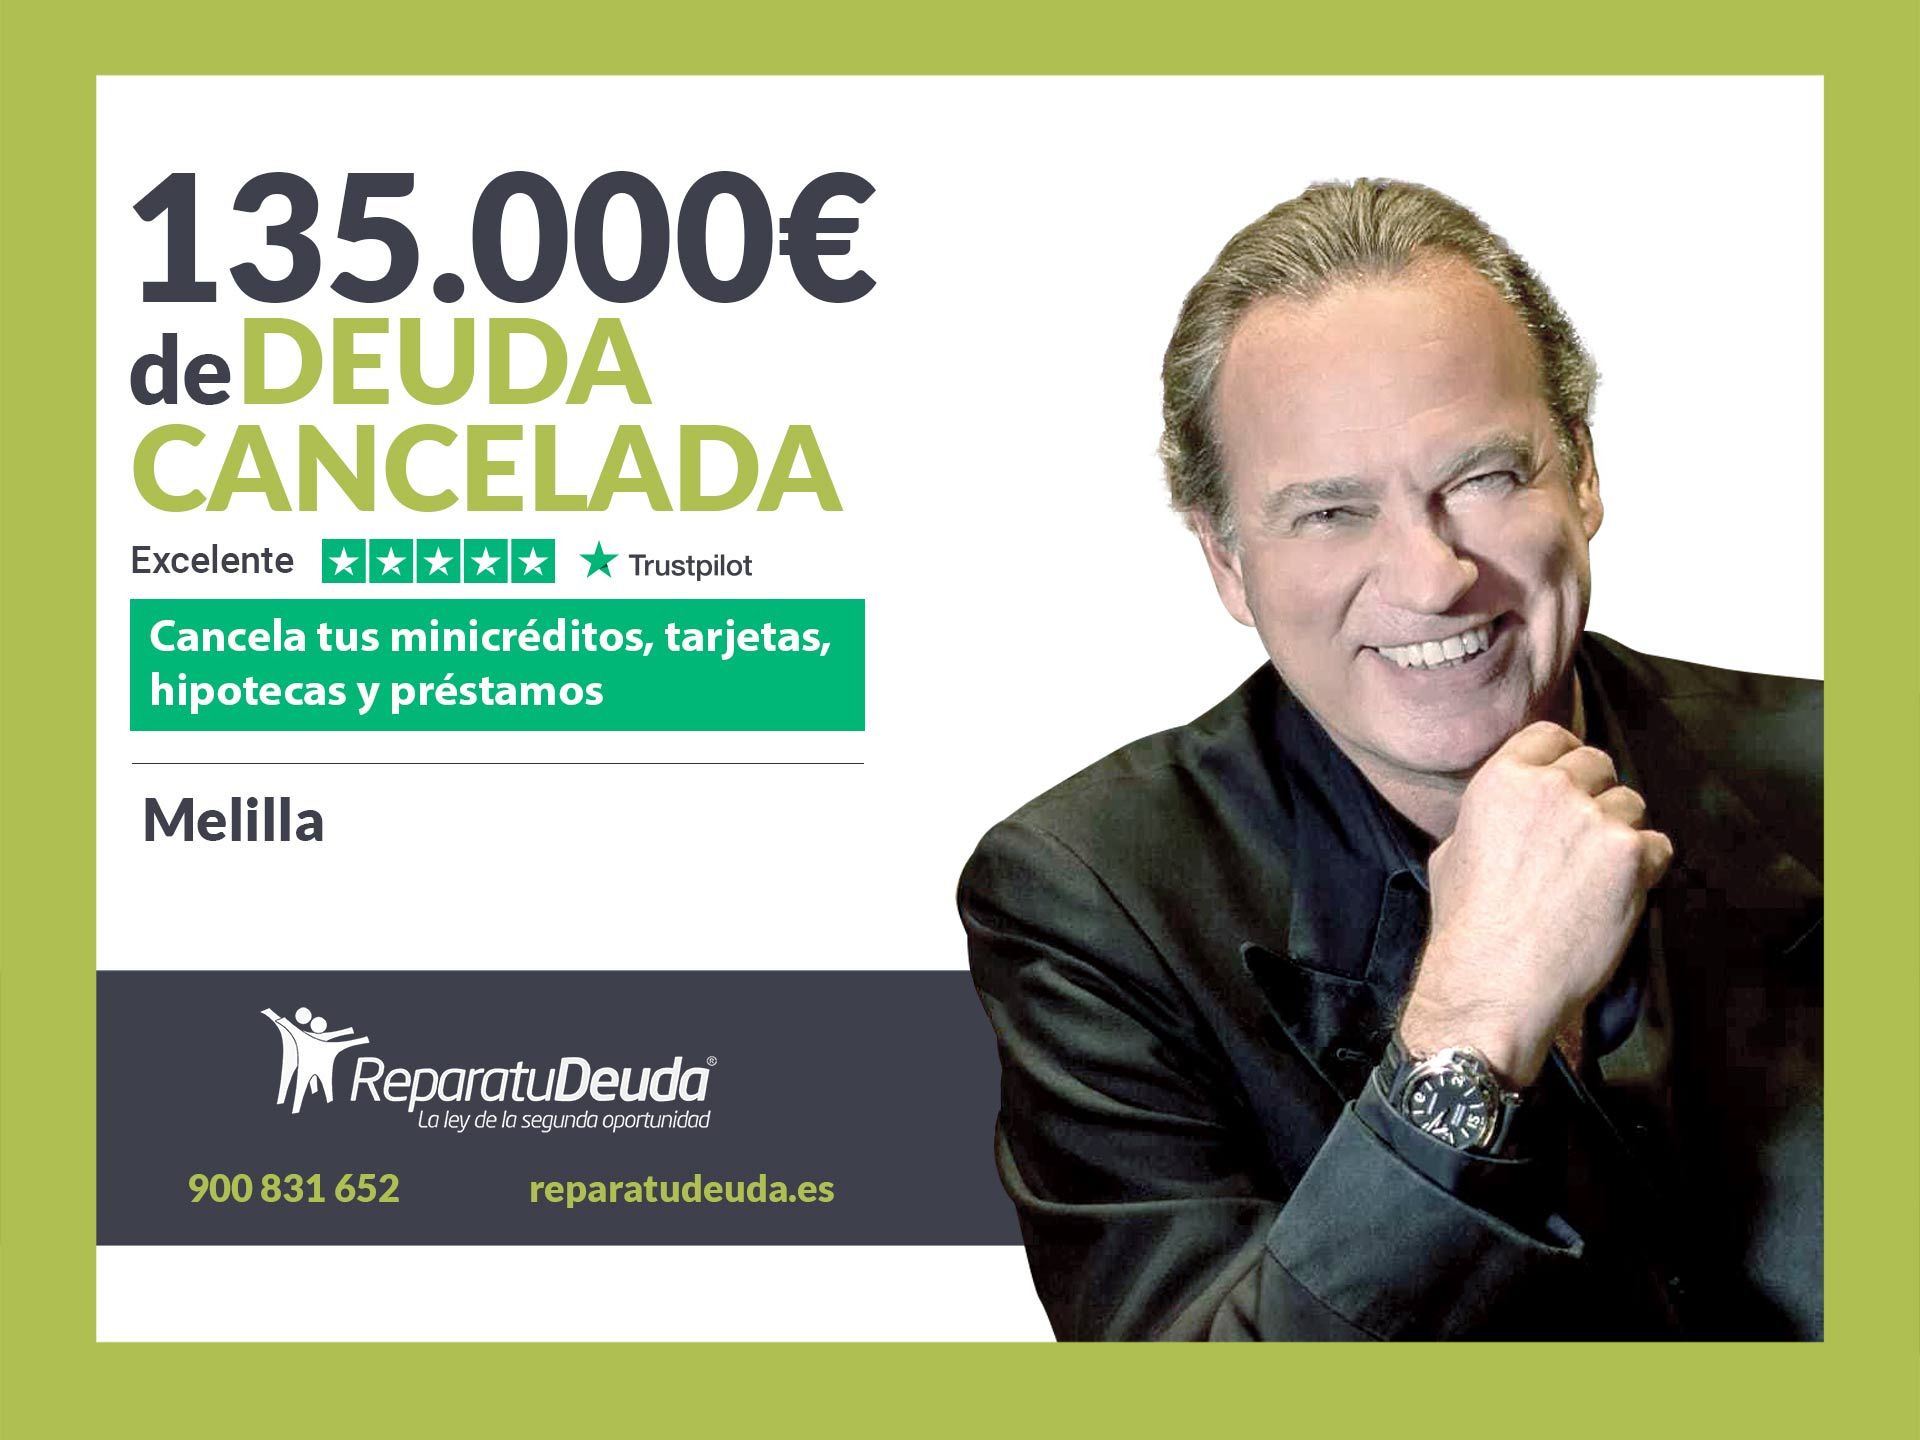 Repara tu Deuda Abogados cancela 135.000? en Melilla con la Ley de Segunda Oportunidad